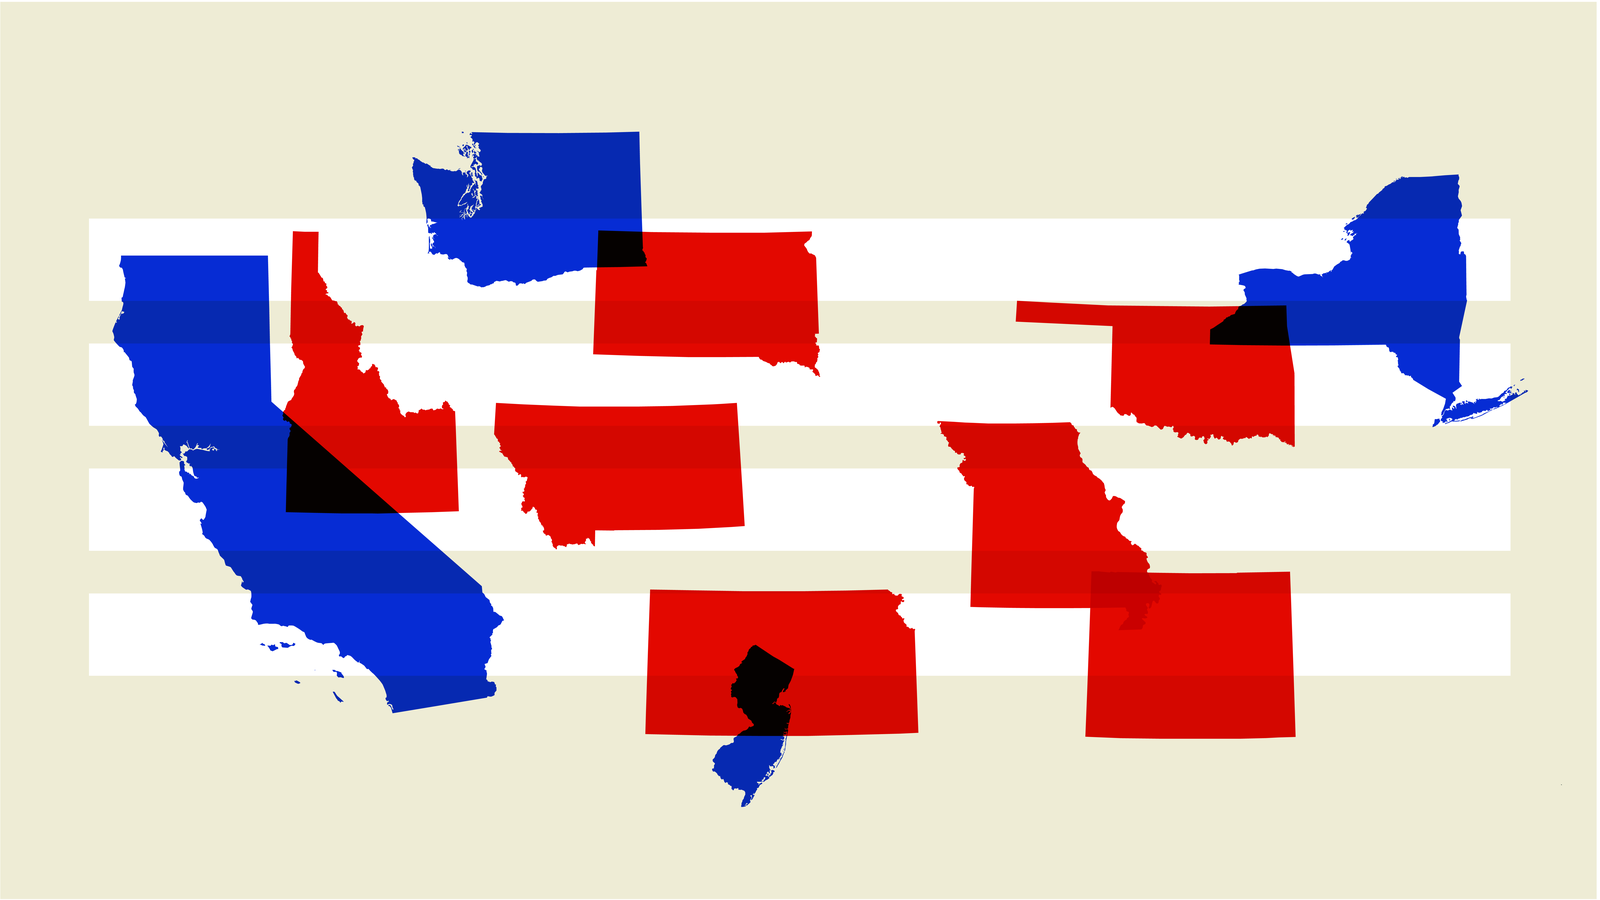 После победы республиканцев. Прогрессивизм флаг. Democrats vs Republicans. Blue vs Red Politics. Democracy Art.